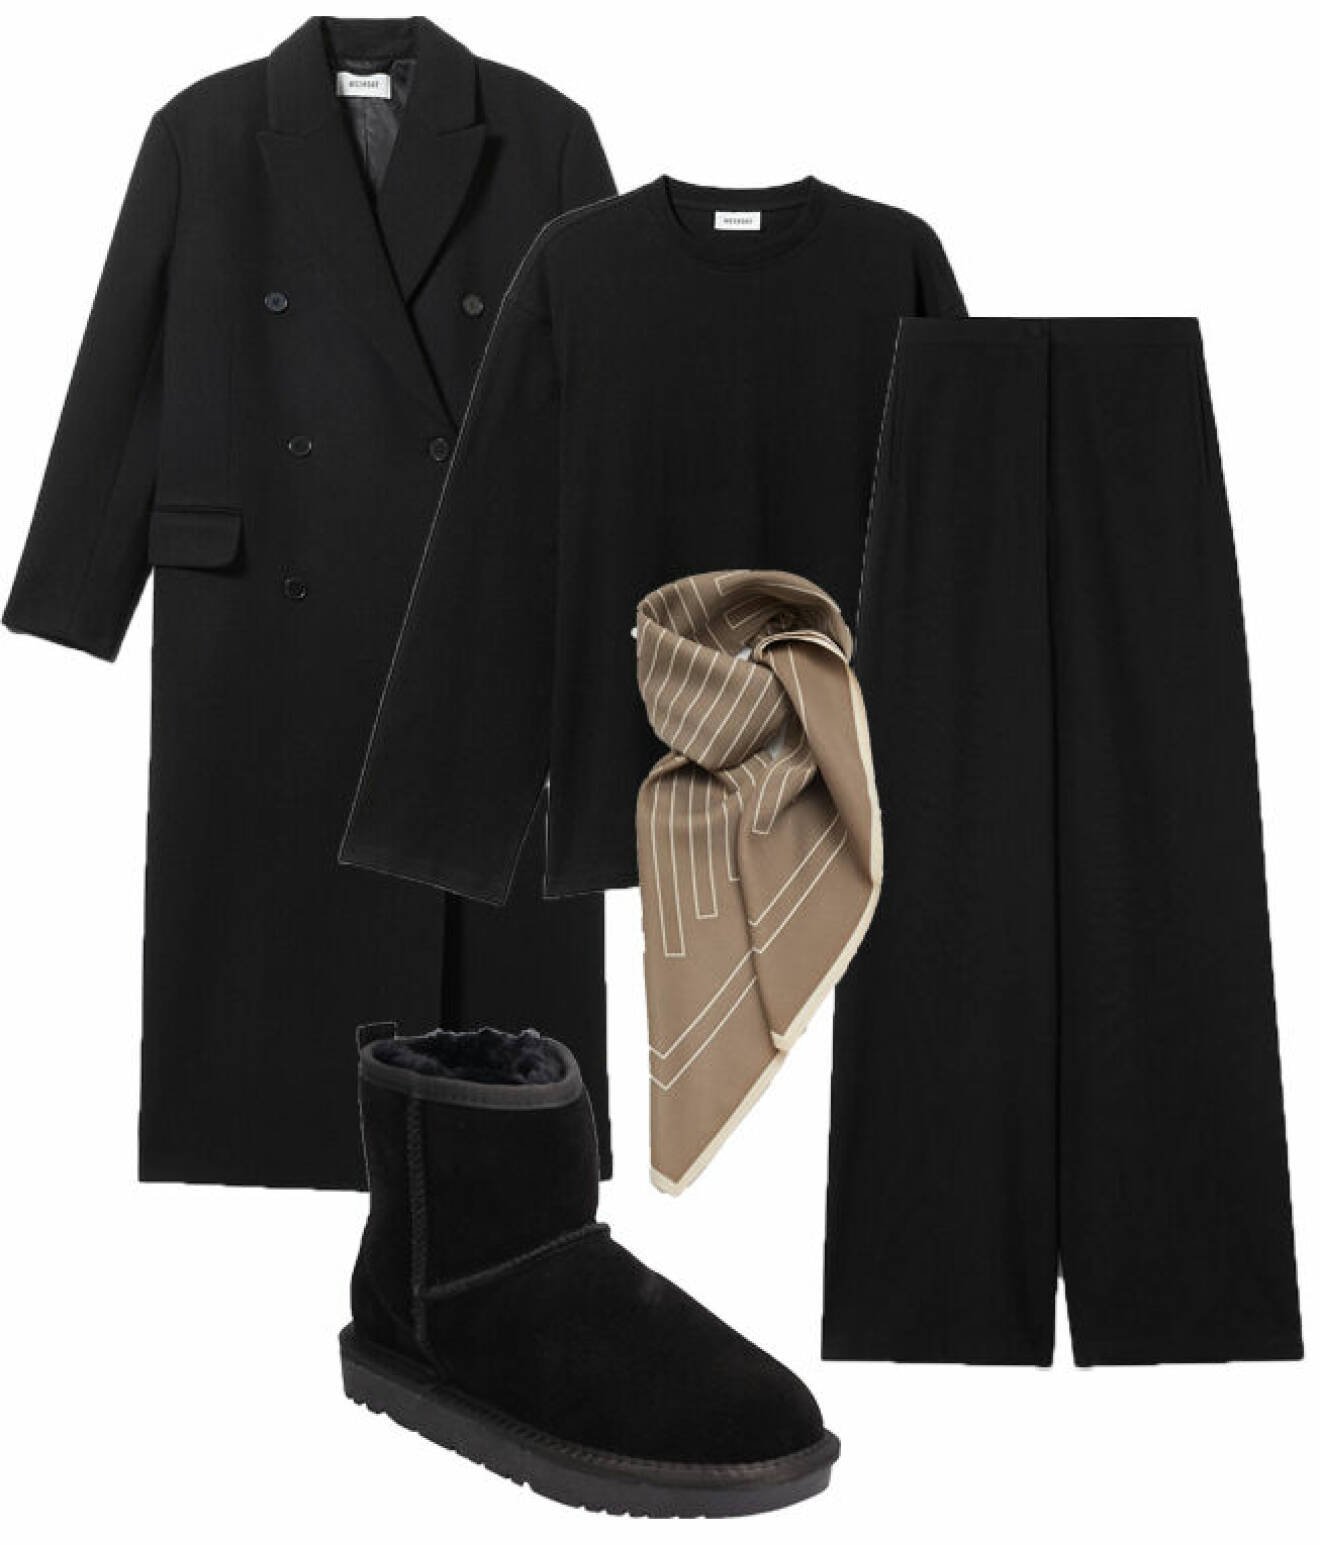 Svart kappa, svart tröja, svarta byxor, scarf och boots.